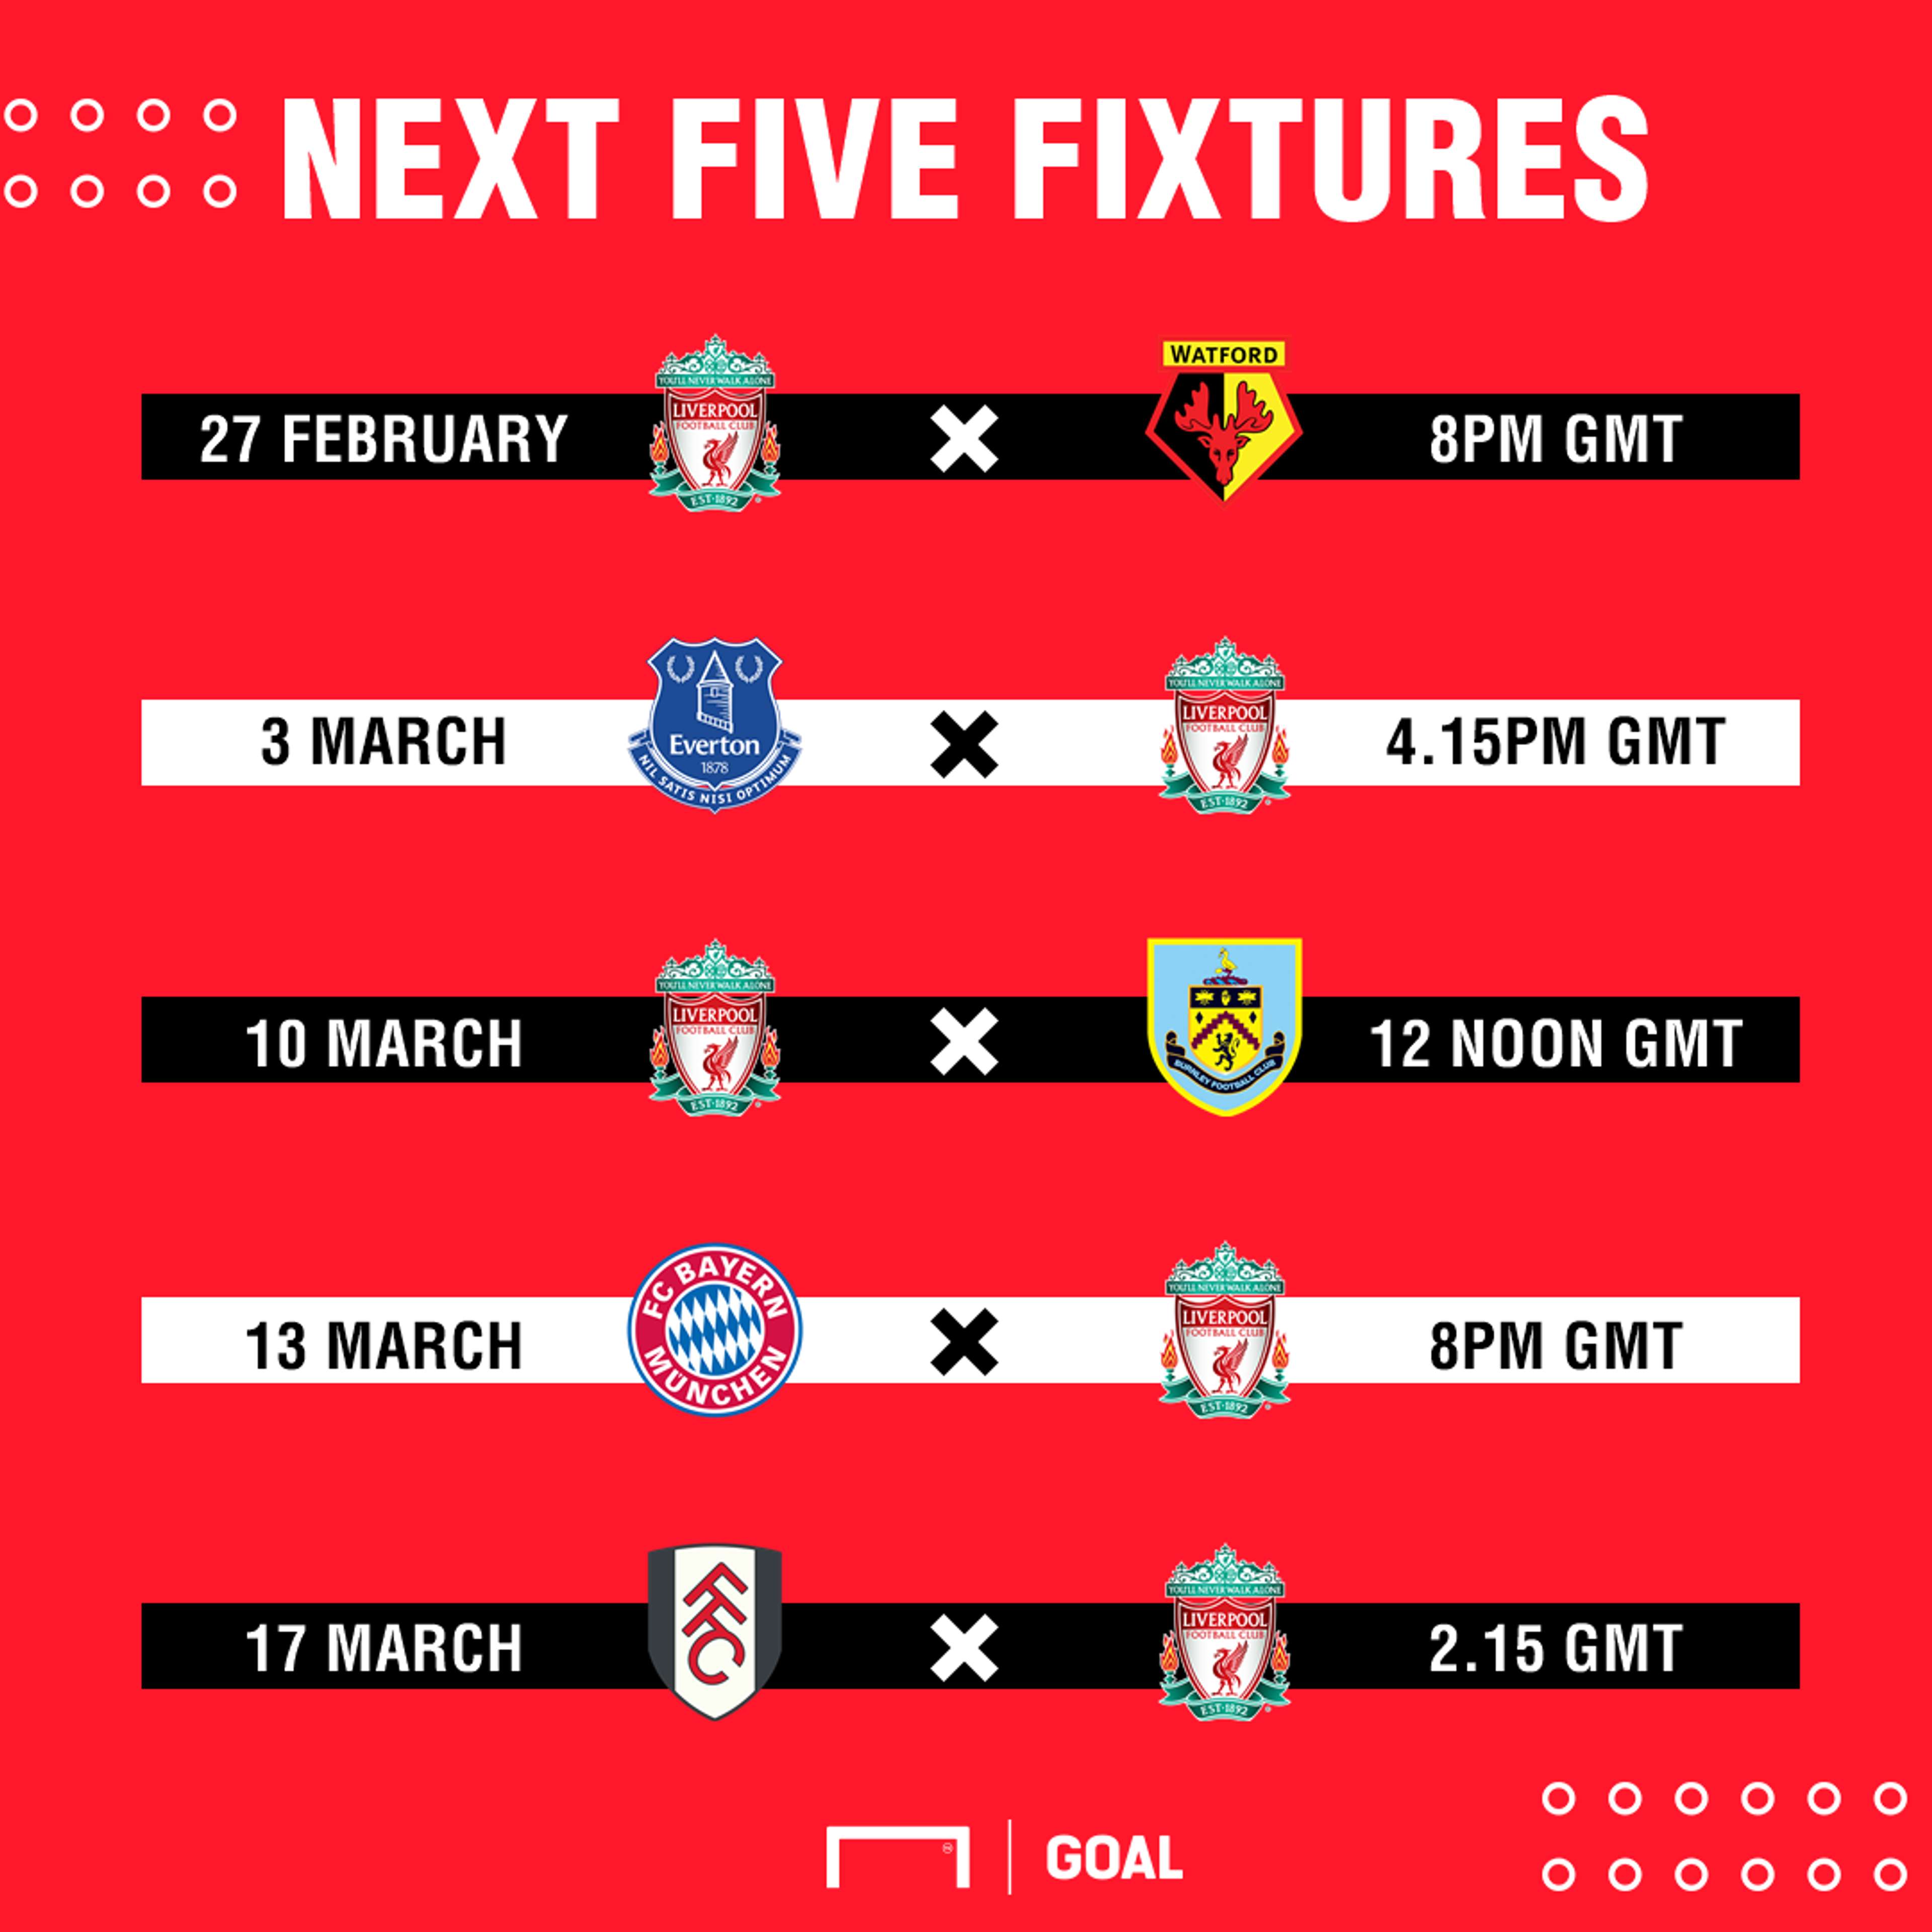 Liverpool's next five fixtures